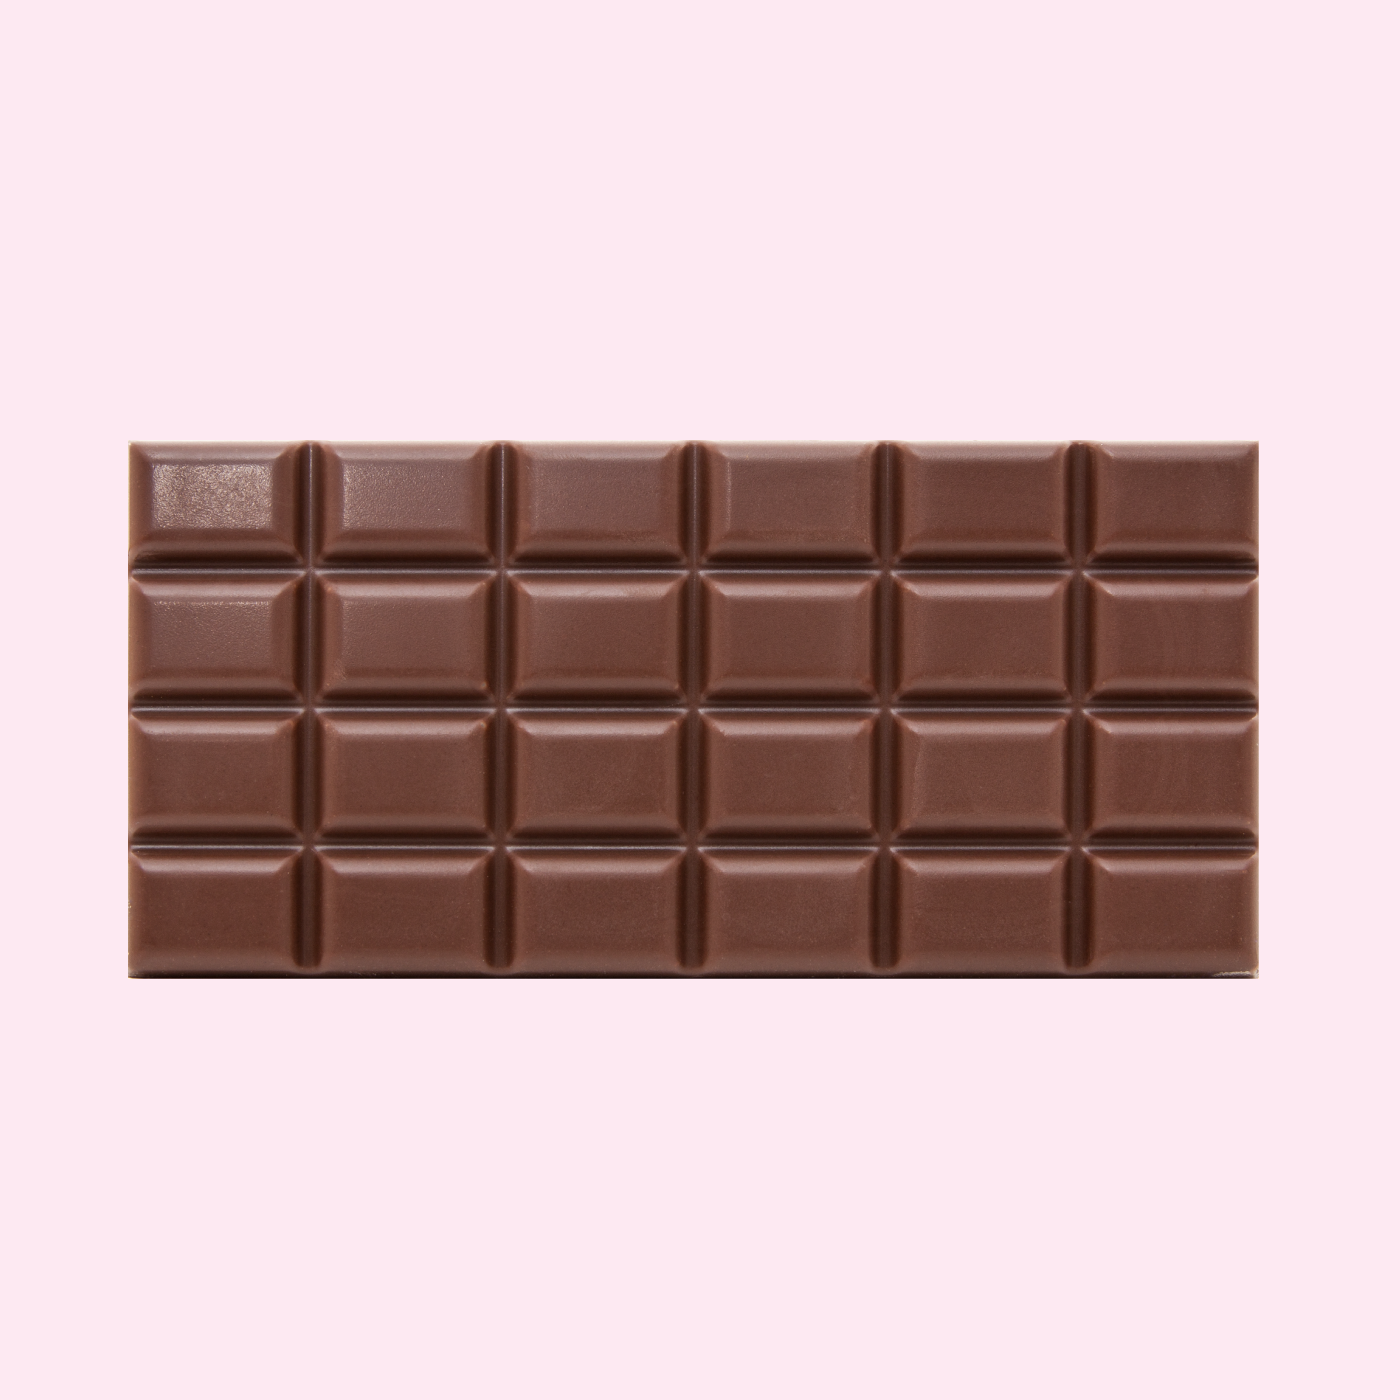 1 5 плитки шоколада. Плитка шоколада. Шоколадная плитка. Шоколадка плитка. Плиточный шоколад.